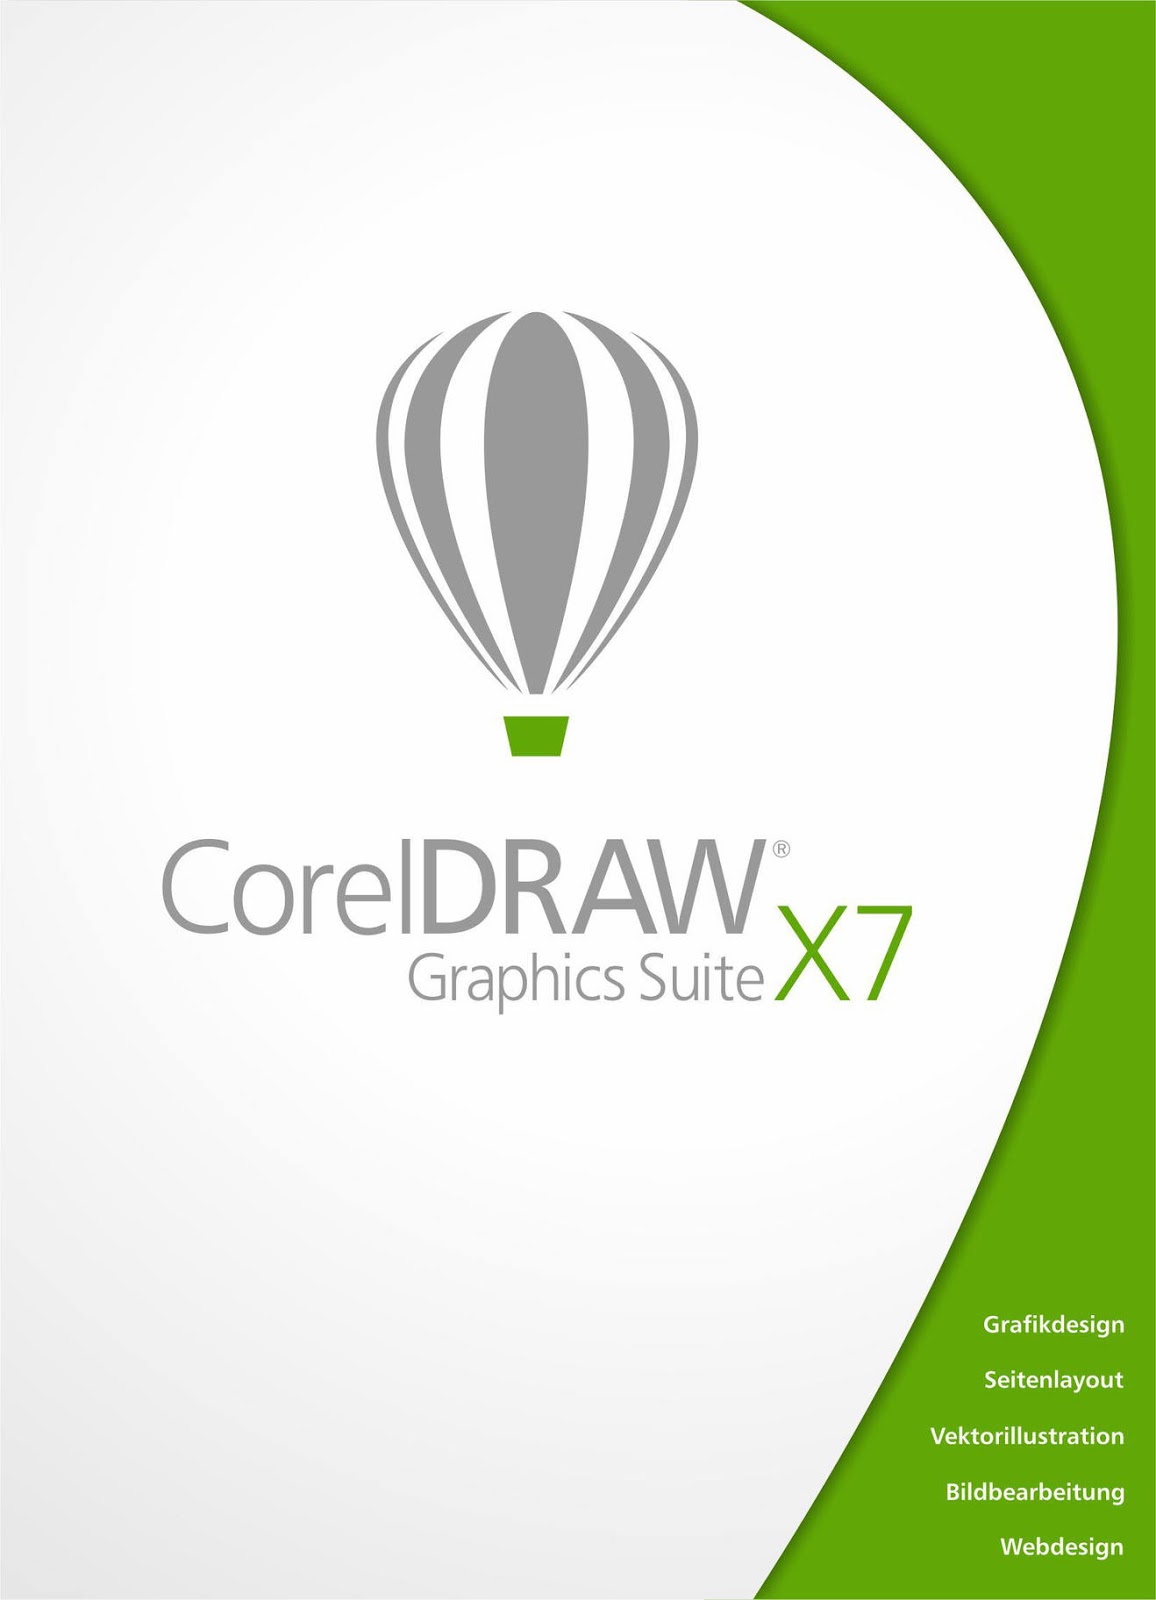 CorelDRAW Graphics Suite X7 español full (32-64 bits) + Keygen XForce